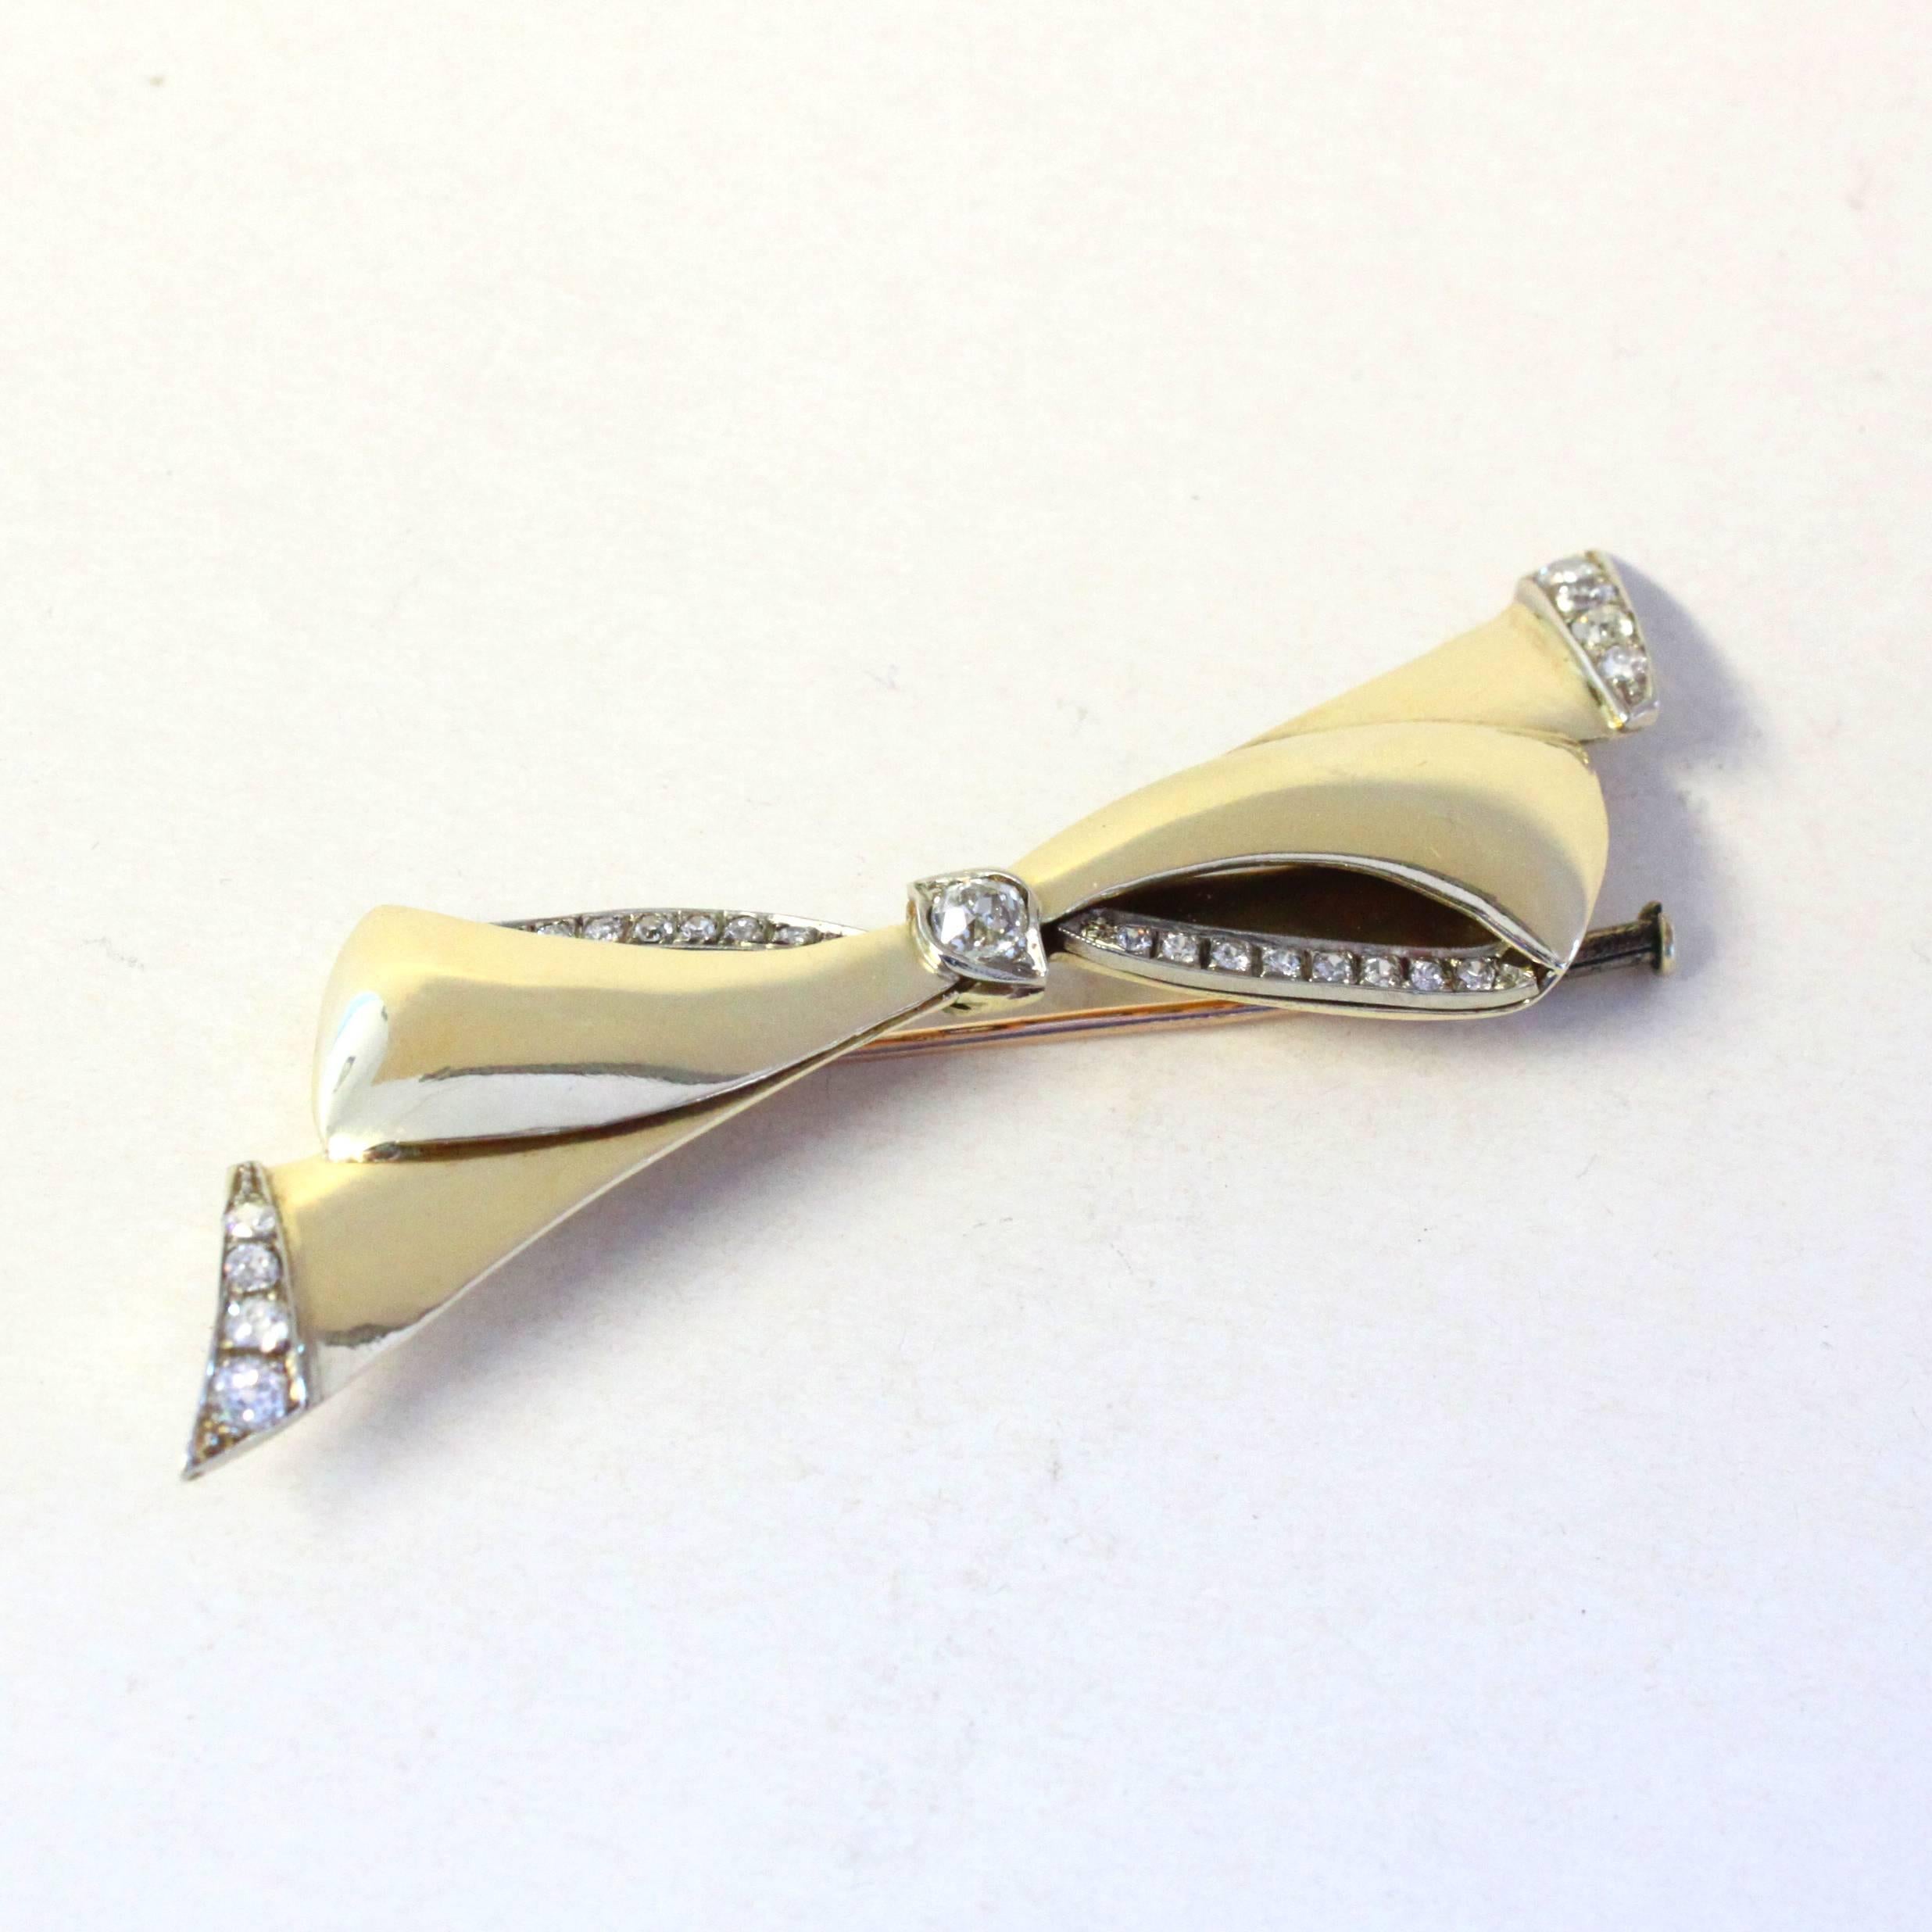 Une magnifique broche à nœud Cartier, vers les années 1940.

Le nœud est constellé de diamants taille ancienne d'environ 2,5 carats et est réalisé en or jaune 18k.

Signé Cartier Paris, marques françaises.